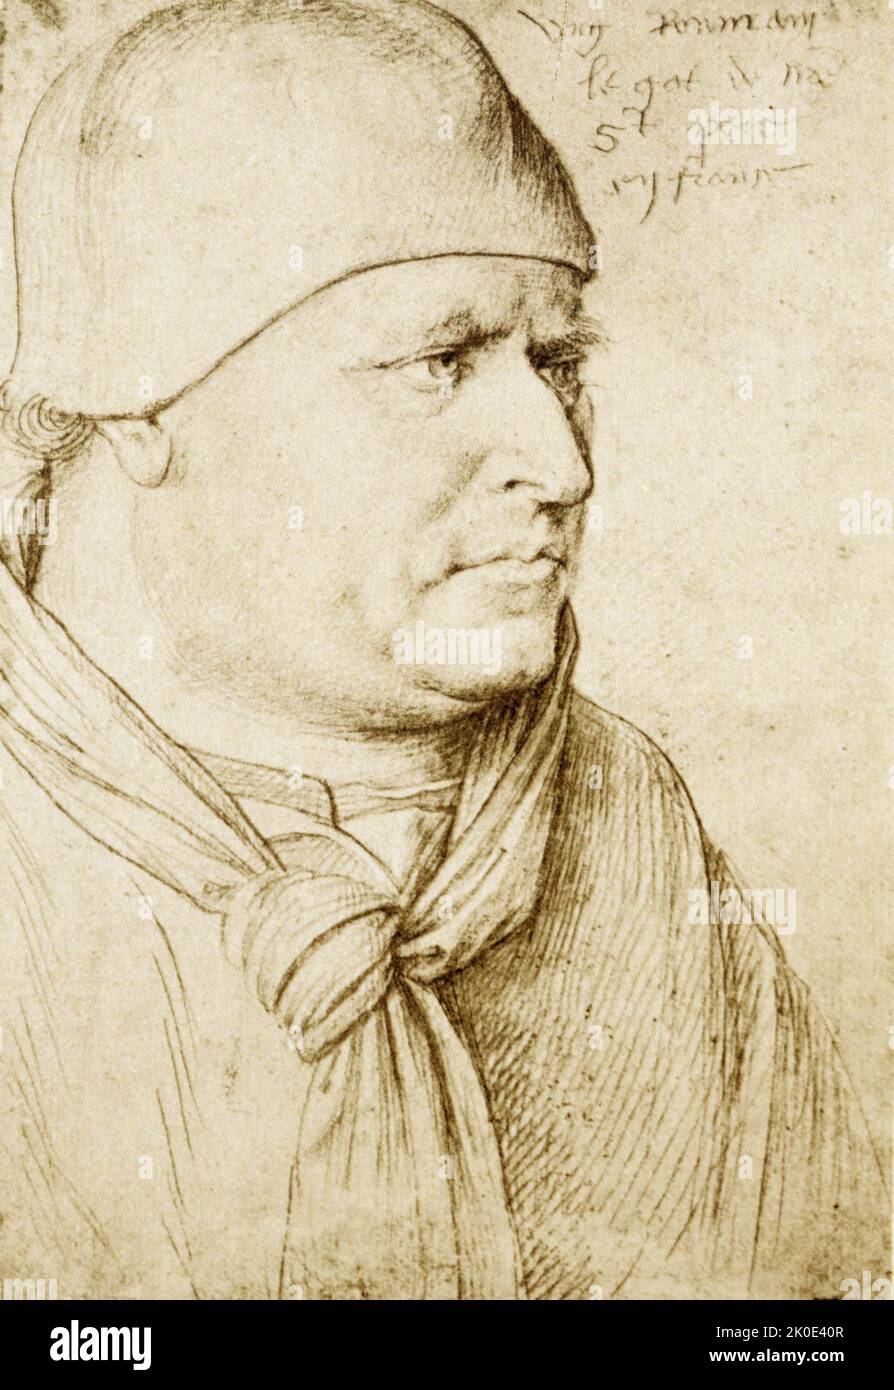 Jean (oder Jehan) Fouquet (ca. 1420-1481) war ein französischer Maler und Miniaturist. Er ist ein Meister der Tafelmalerei und der Buchmalerei und der scheinbare Erfinder der Porträtminiatur und gilt als einer der wichtigsten Maler aus der Zeit zwischen der Spätgotik und der Frühen Renaissance. Stockfoto